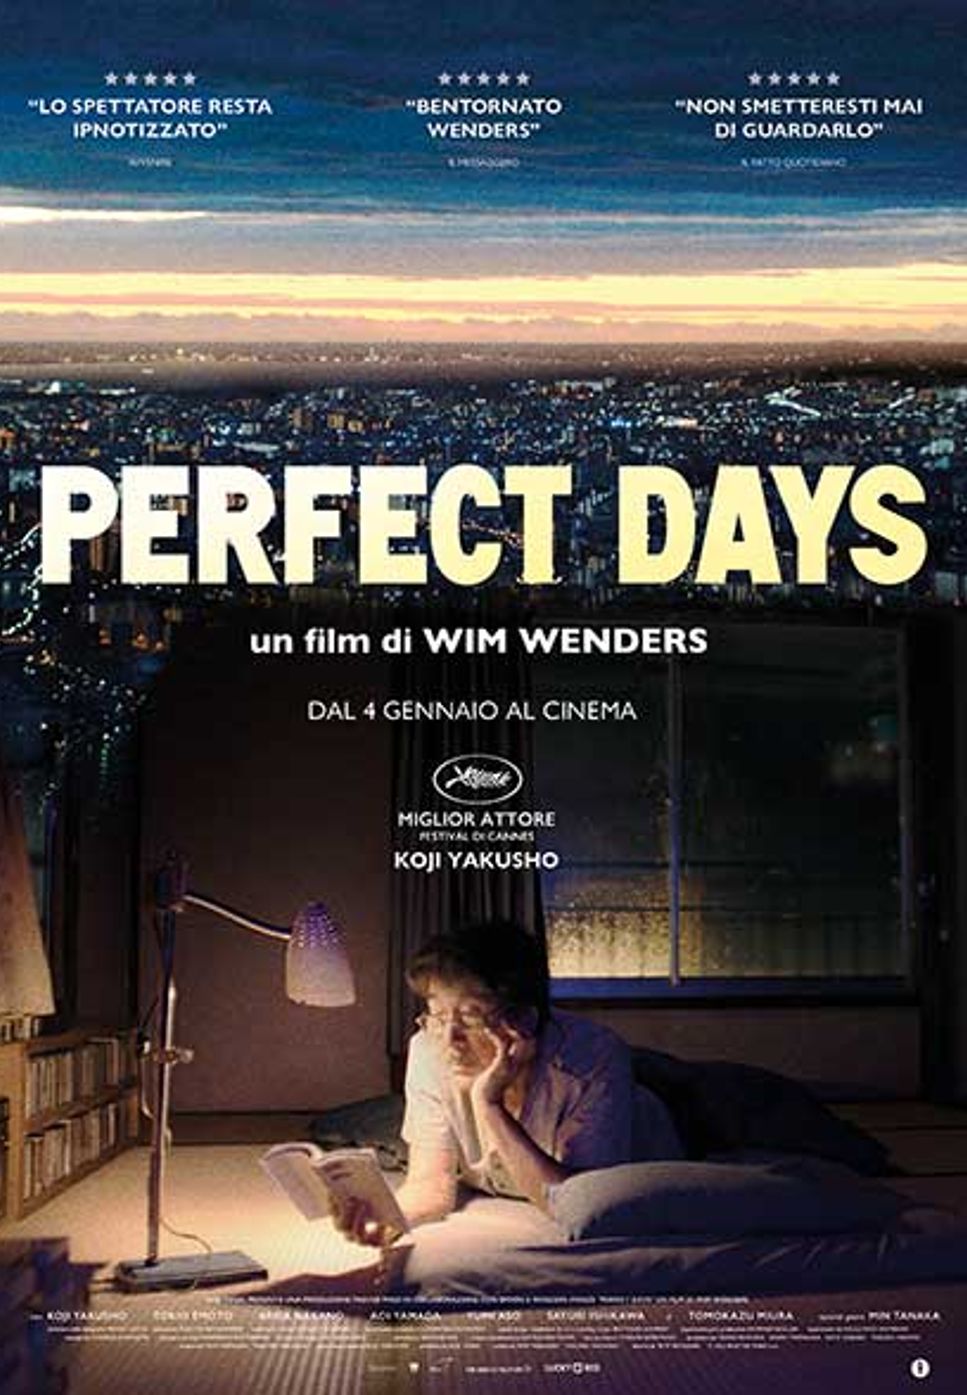 Lou Reed - Perfect Days (Komorebi Version) by Pei-Ying Pan